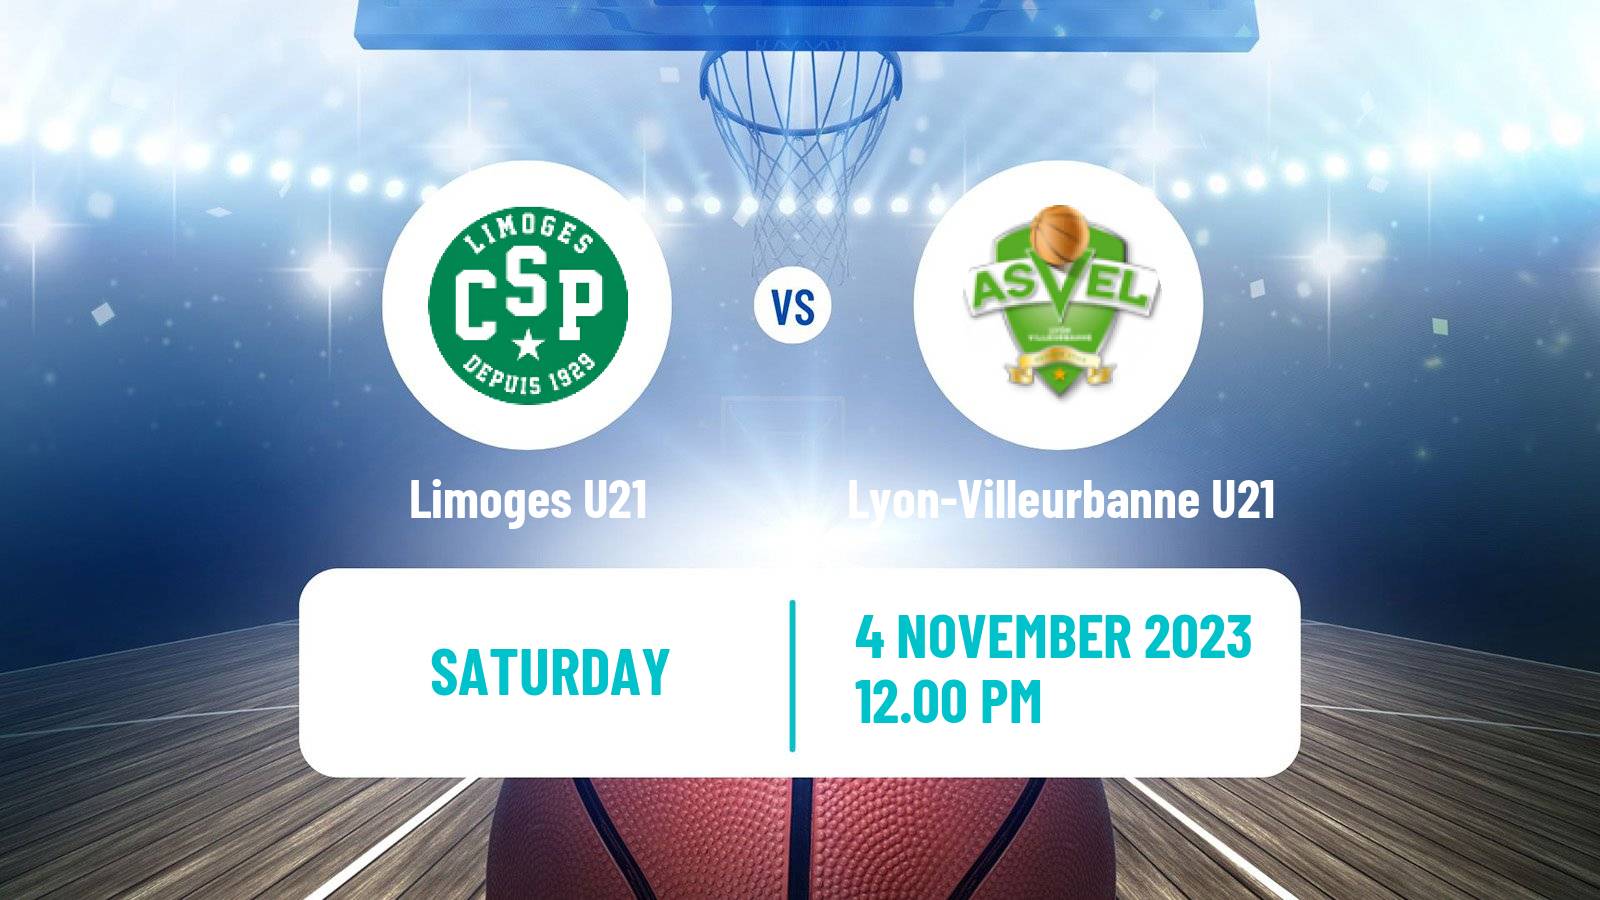 Basketball French Espoirs U21 Basketball Limoges U21 - Lyon-Villeurbanne U21